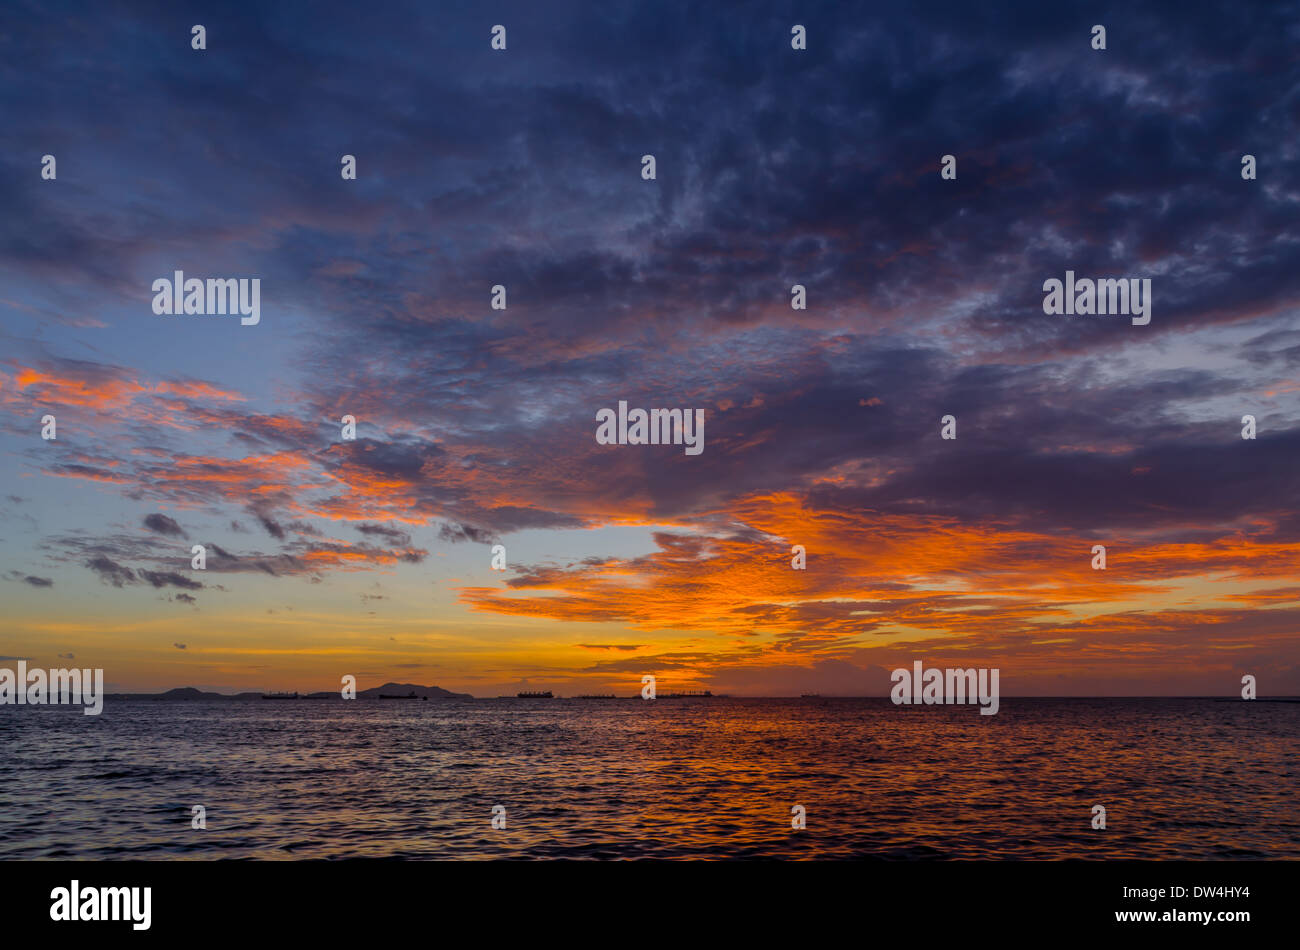 Le coucher de soleil couleur or brillant derrière un nuage avec un beau marin Banque D'Images